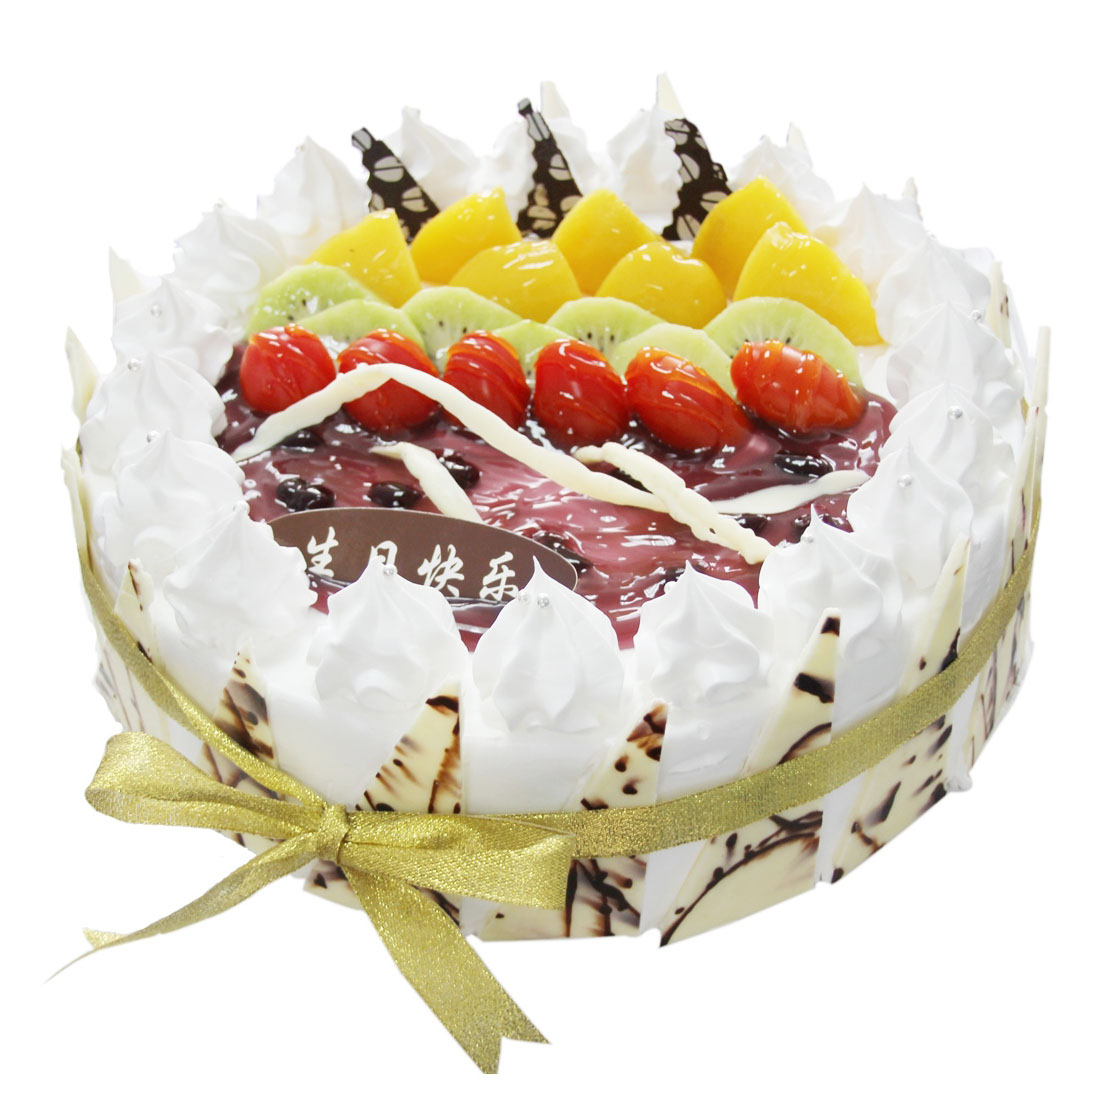 M系列蛋糕-黑池蛋糕_深圳顶级欧式甜点专家,其产品系列为黑池蛋糕,黑池马卡龙,黑池杯子蛋糕